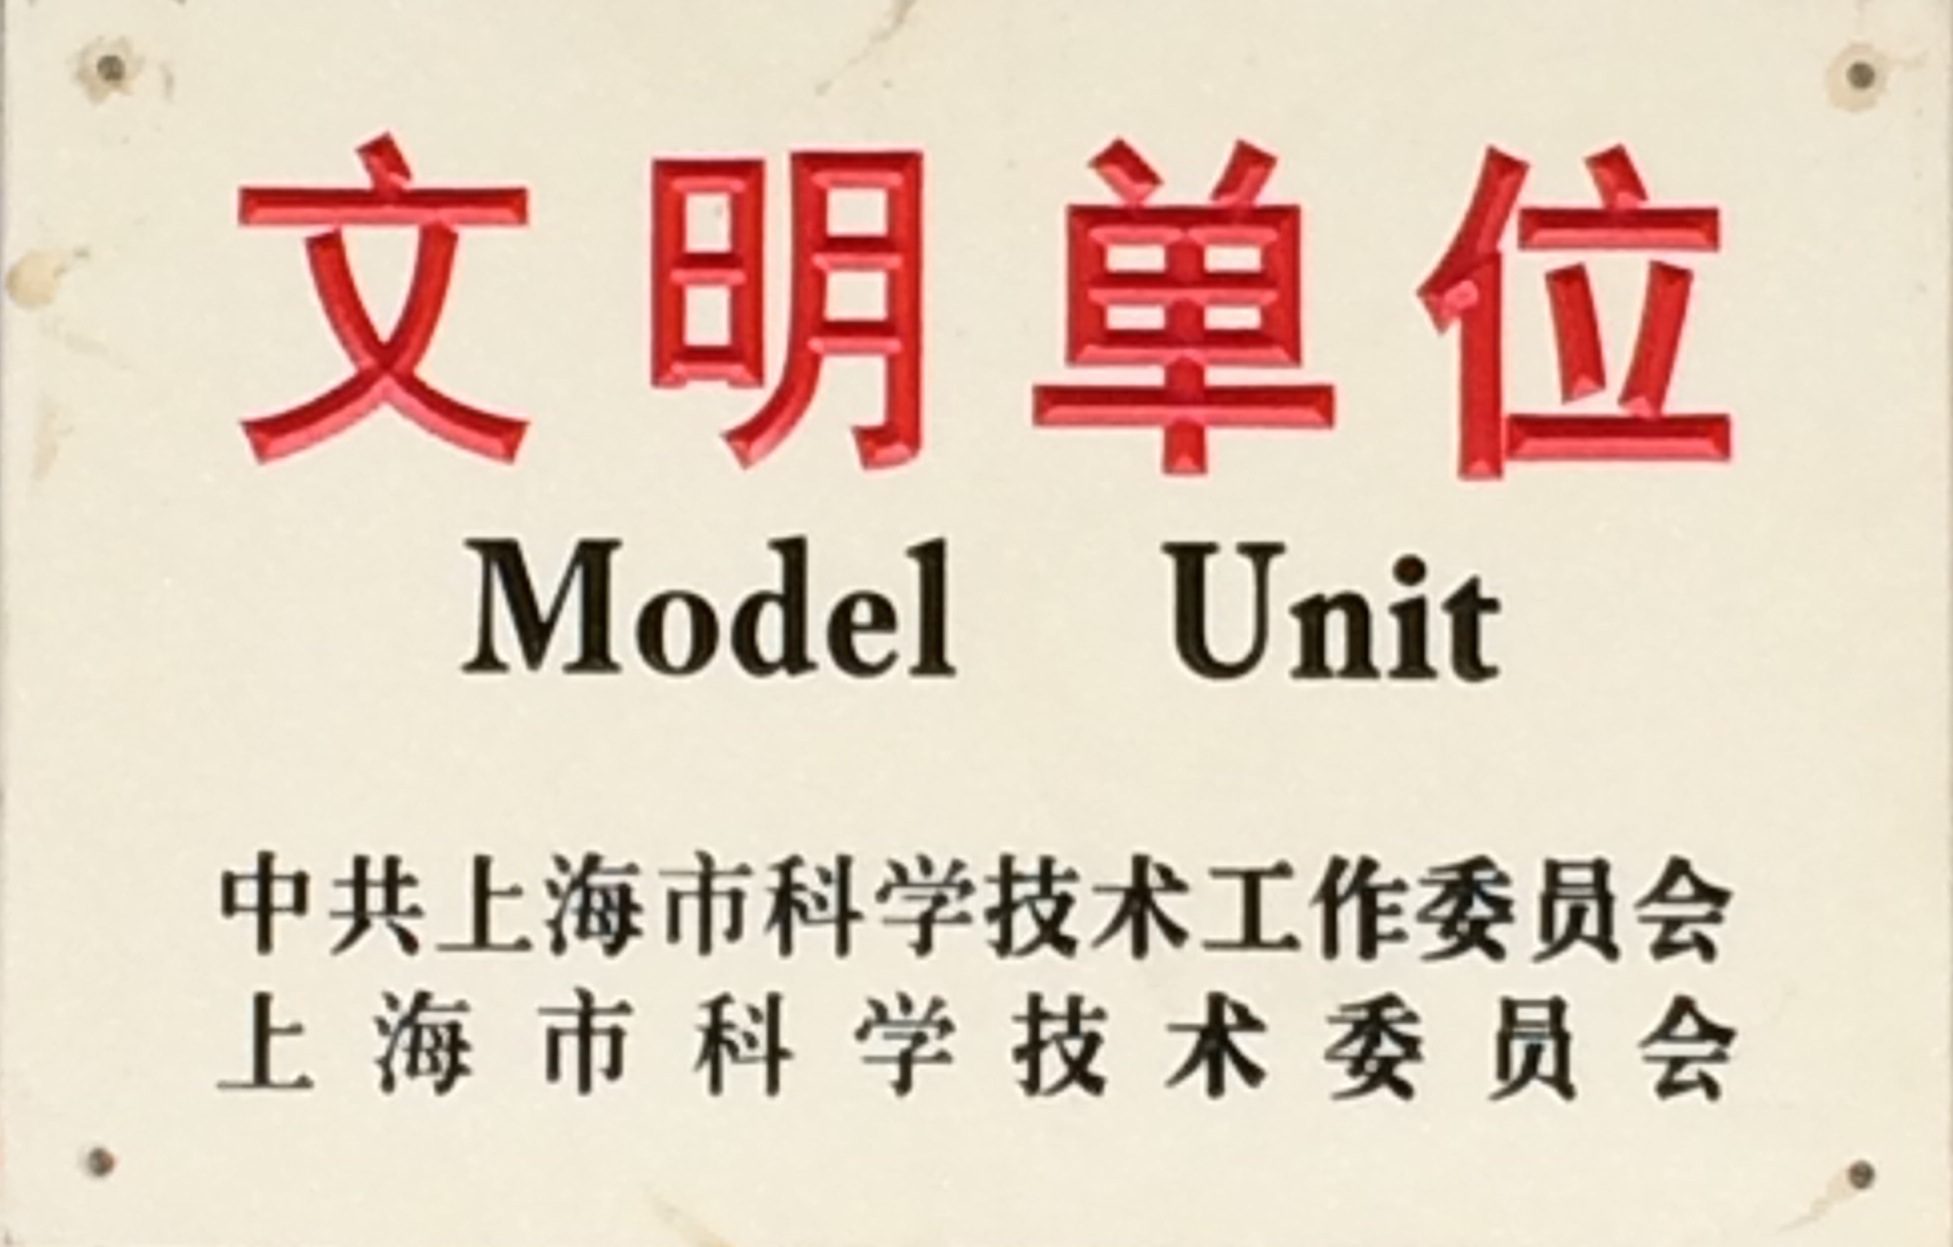  上海市科技系统文明单位